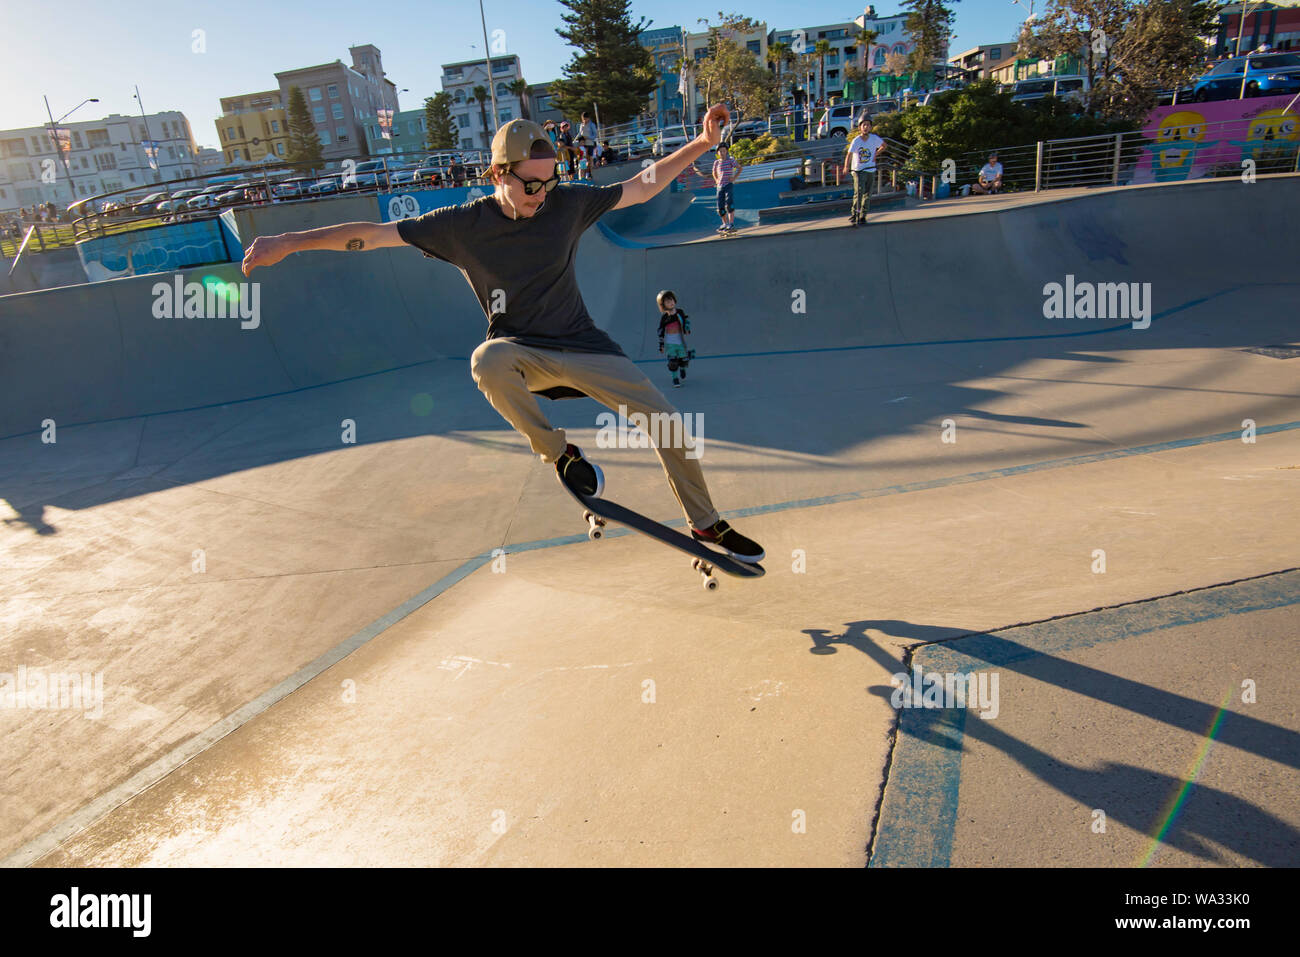 In den späten Nachmittag Sonne am Bondi Beach Skate Park eine junge männliche Skateboarder erhält etwas Luft. Stockfoto